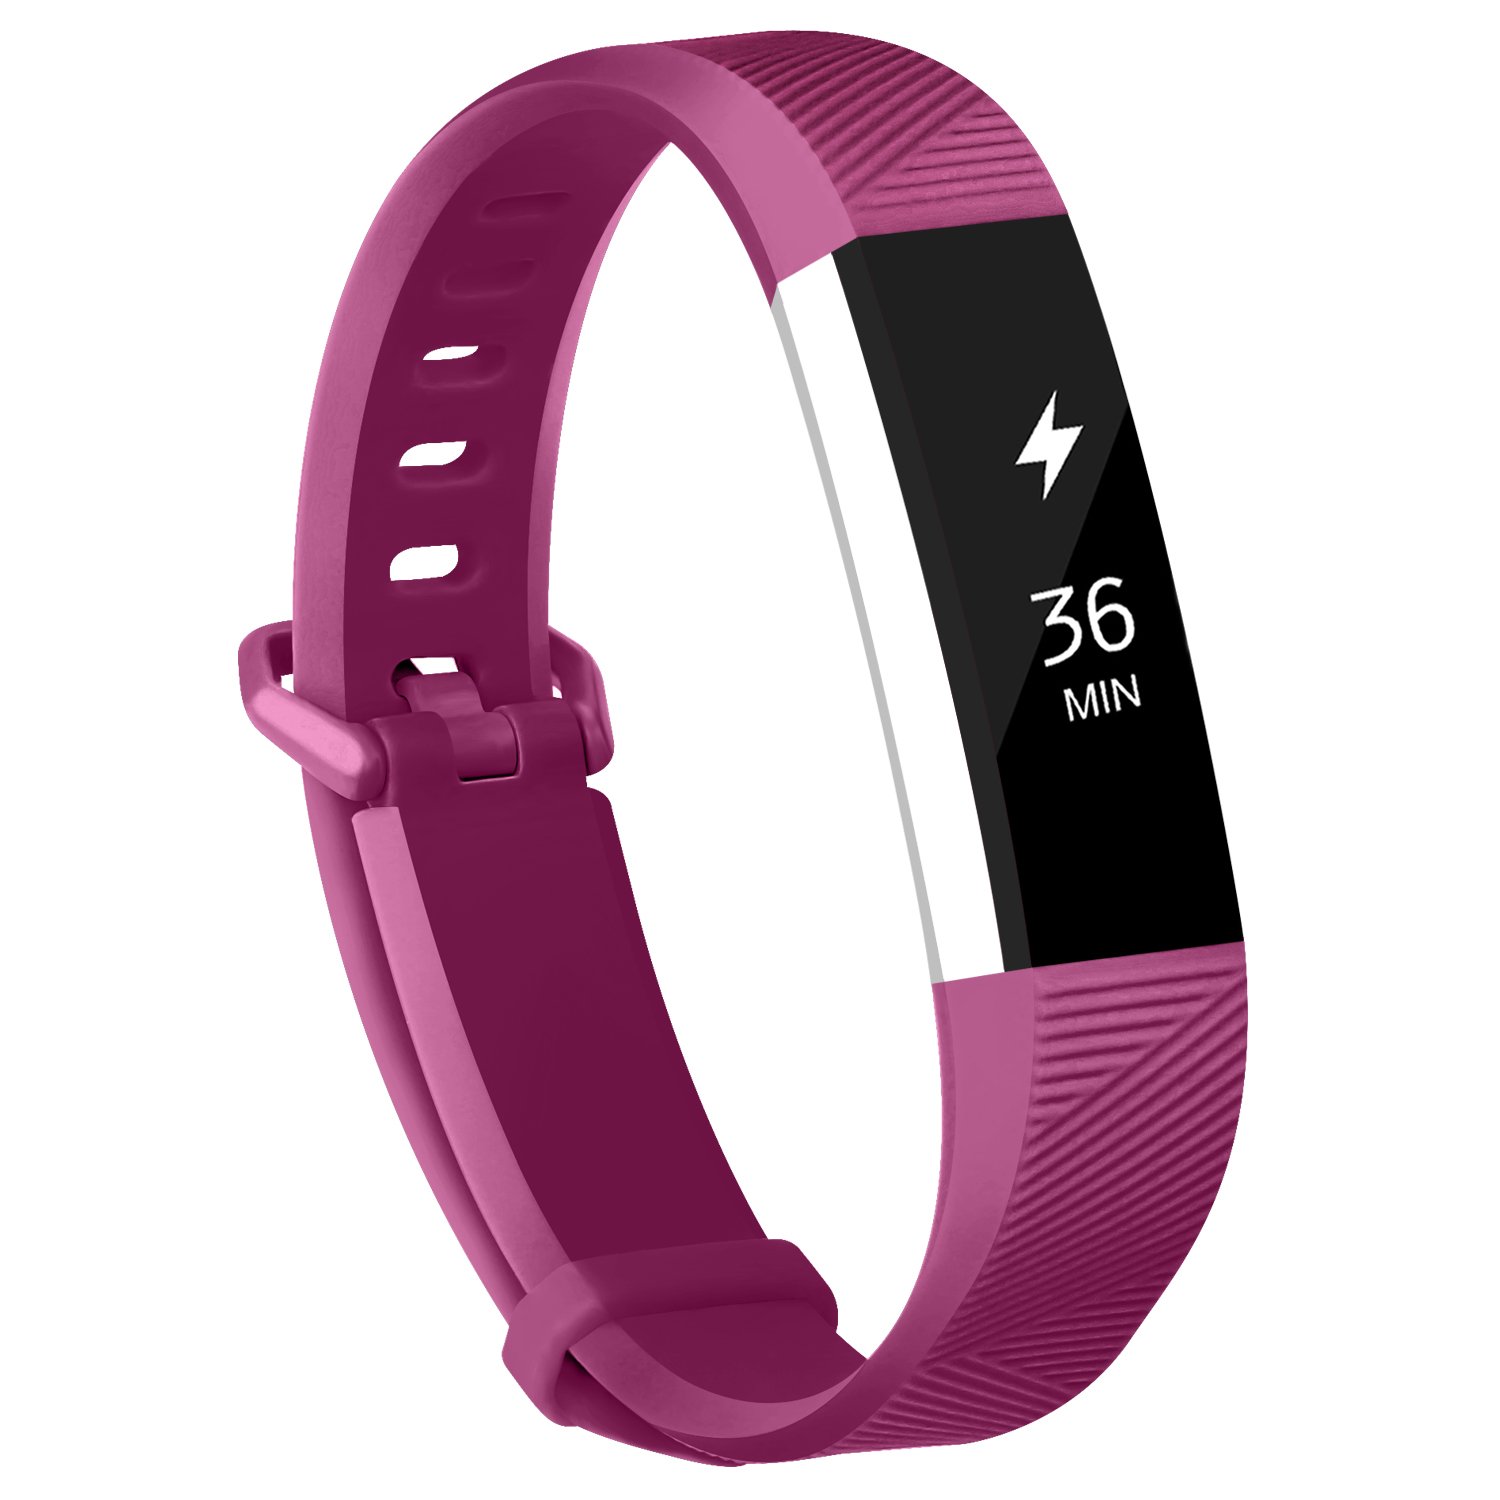  12色 シリコン時計バンド 交換 FitbitアルタHR リストバンド シリコンストラップ クラスプ スマートリストバンド時計  | バリエーション:濃紫